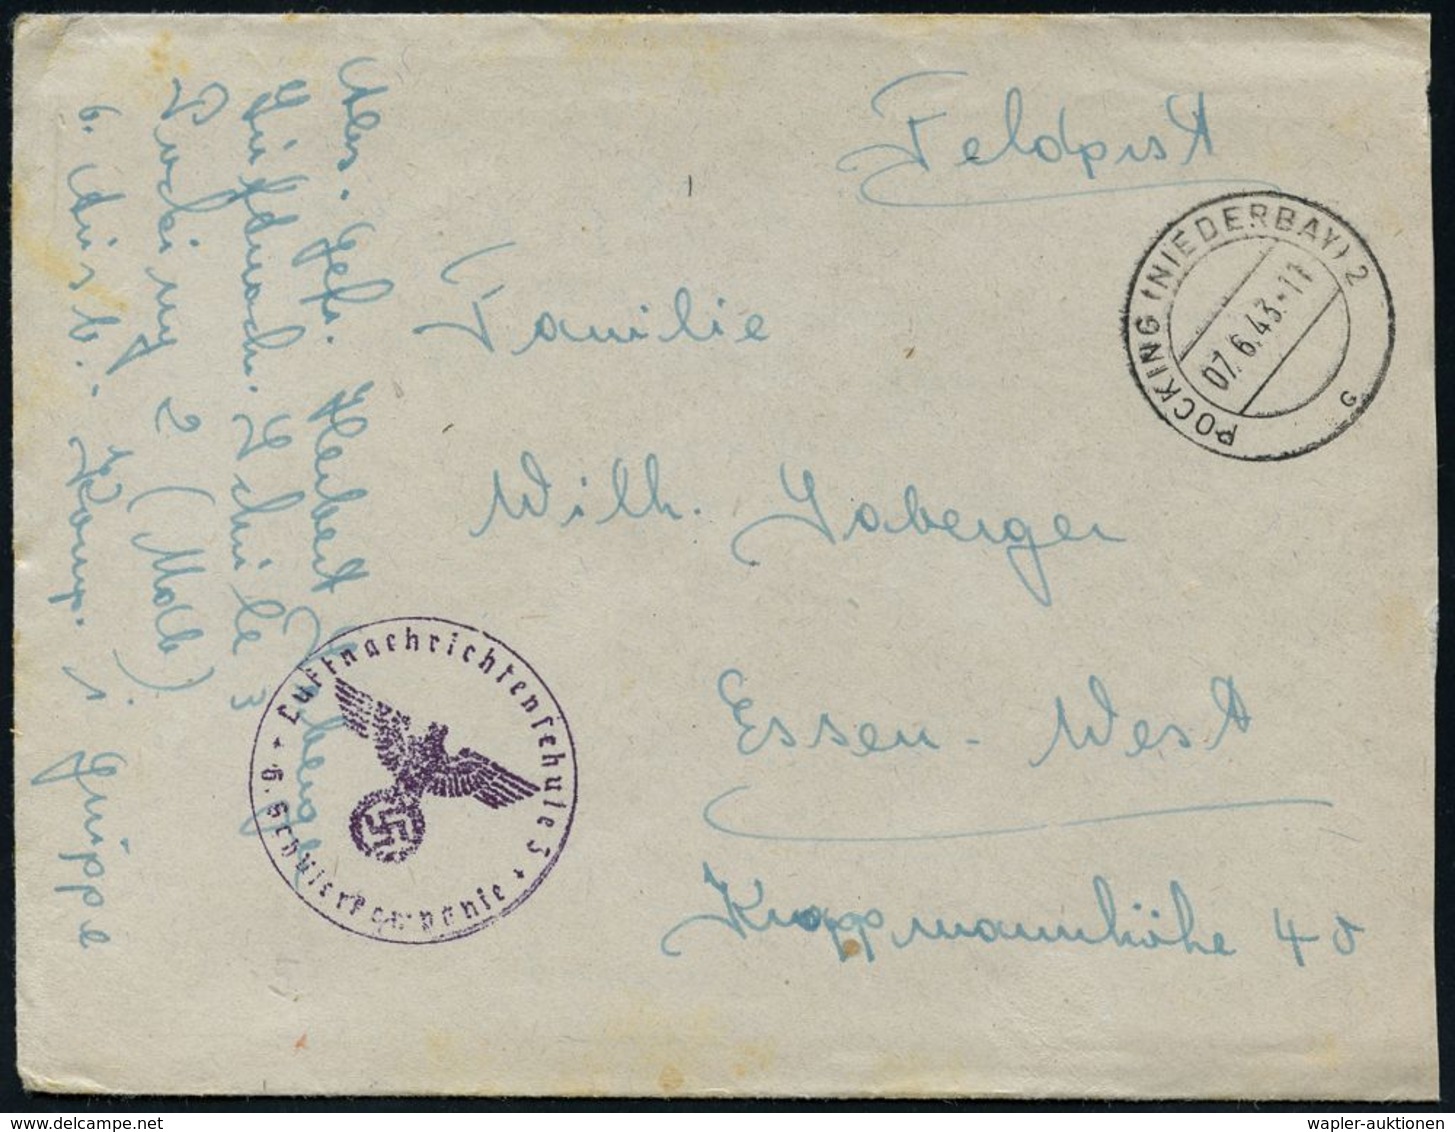 LUFTWAFFEN-FLUGSCHULEN & AKADEMIEN : POCKING (NIEDERBAY) 2/ C #bzw.# B 1941/43 3 Verschiedene Briefstempel Der Luftnachr - Aerei